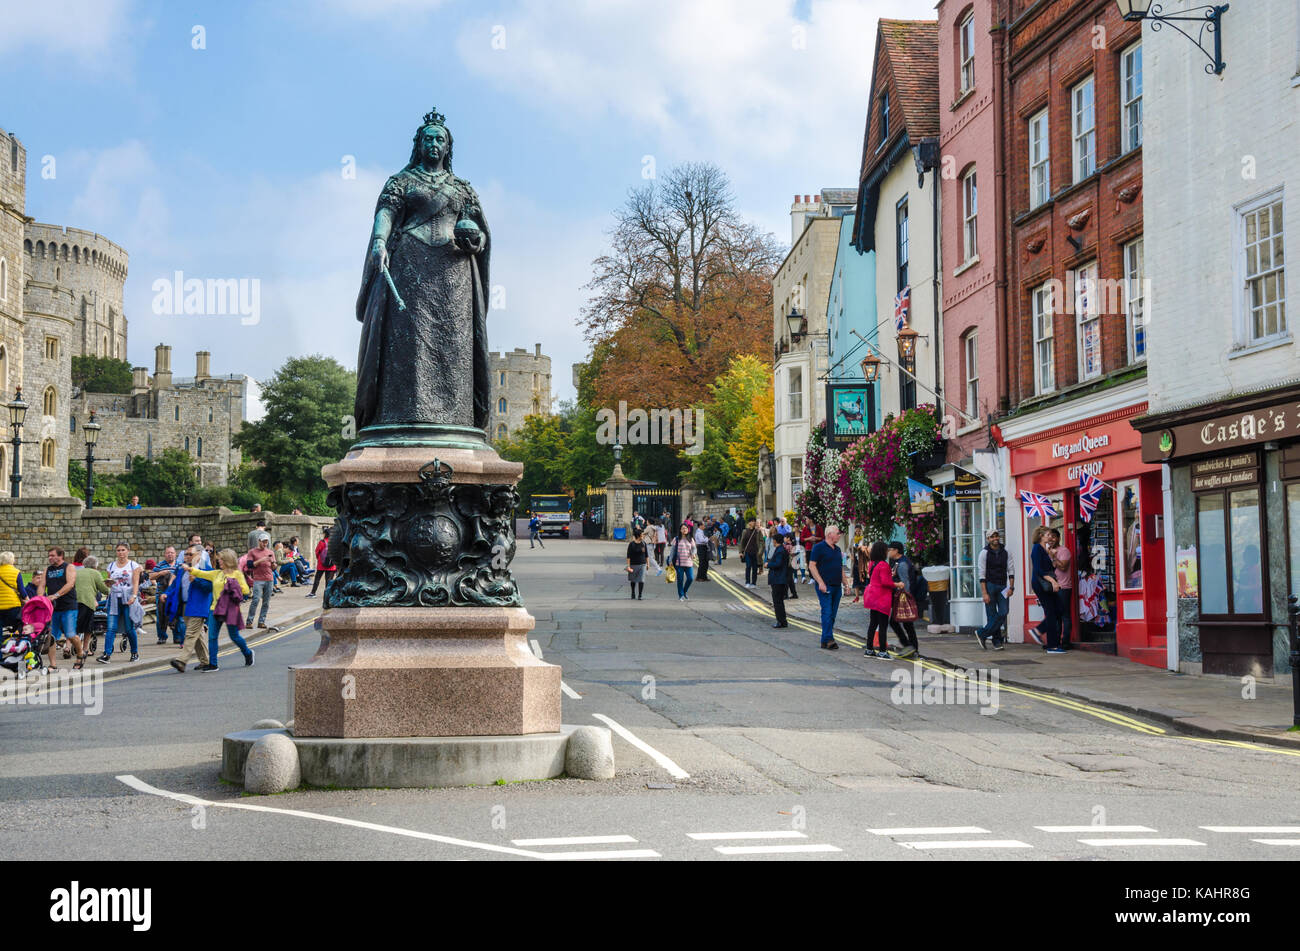 Une statue de la reine Victoria se trouve à l'extérieur du château de Windsor à Windsor, Royaume-Uni Banque D'Images